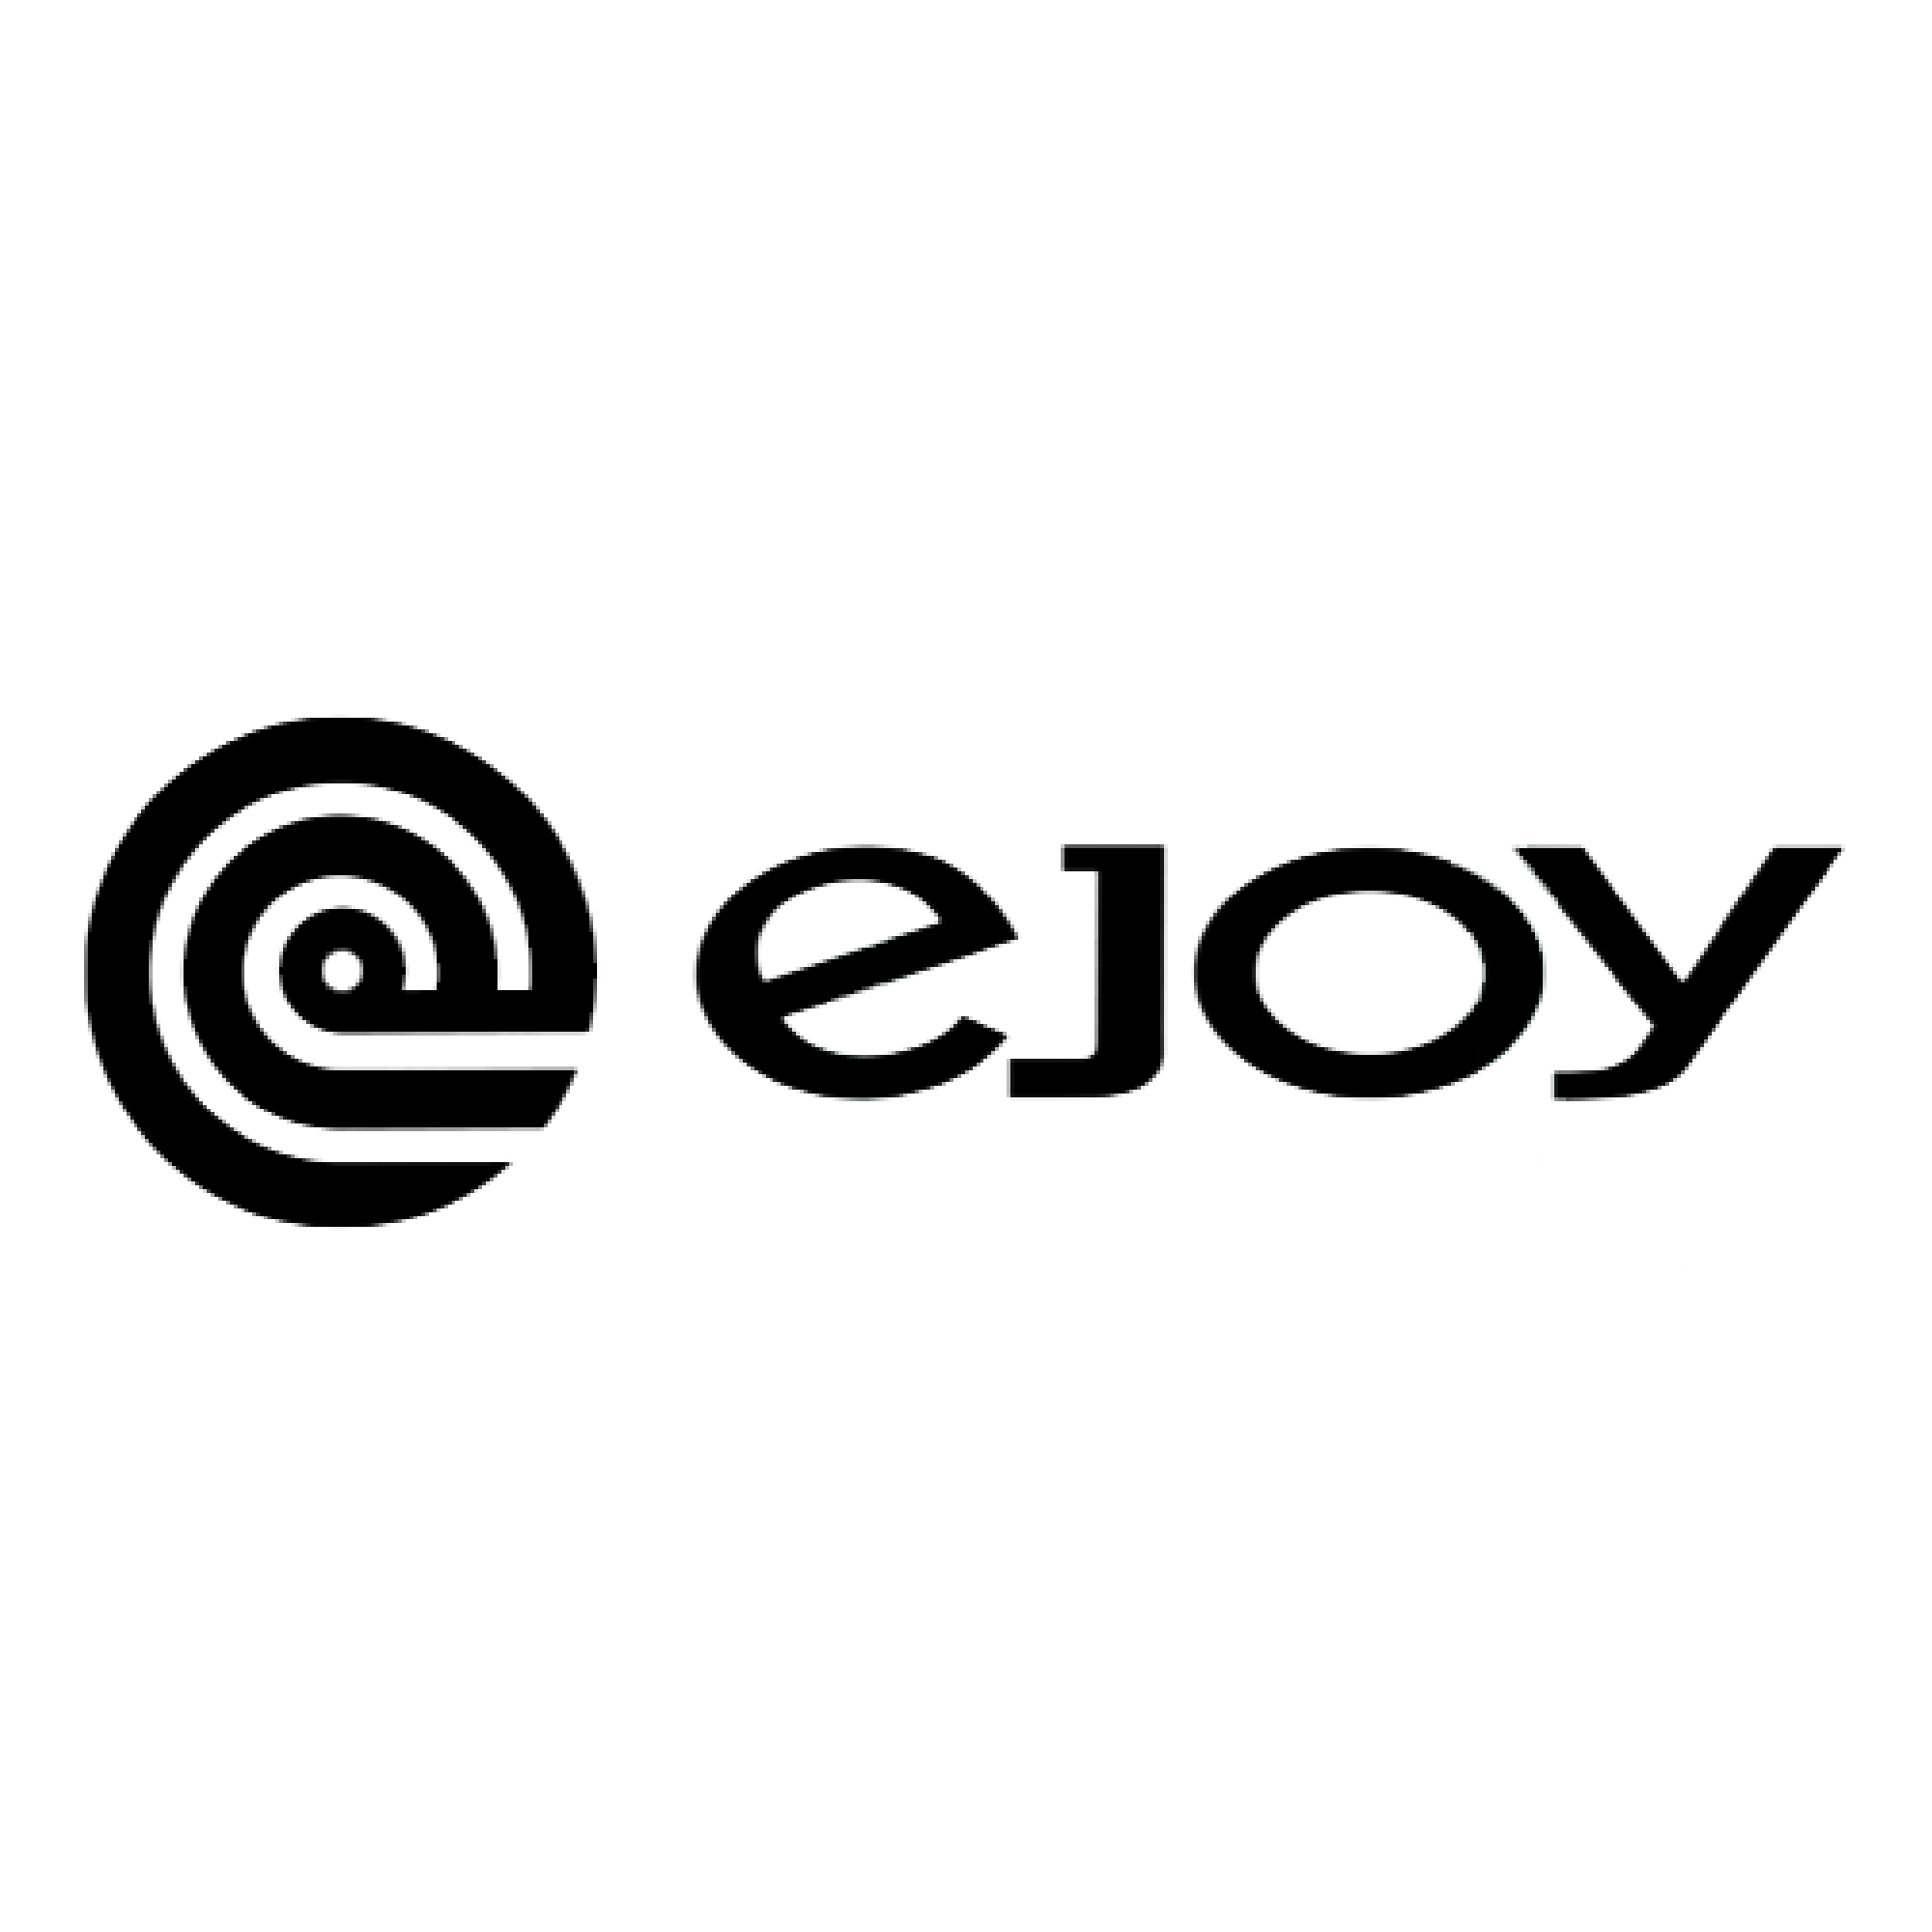 "логотип бренда EJOY (Иджой)"